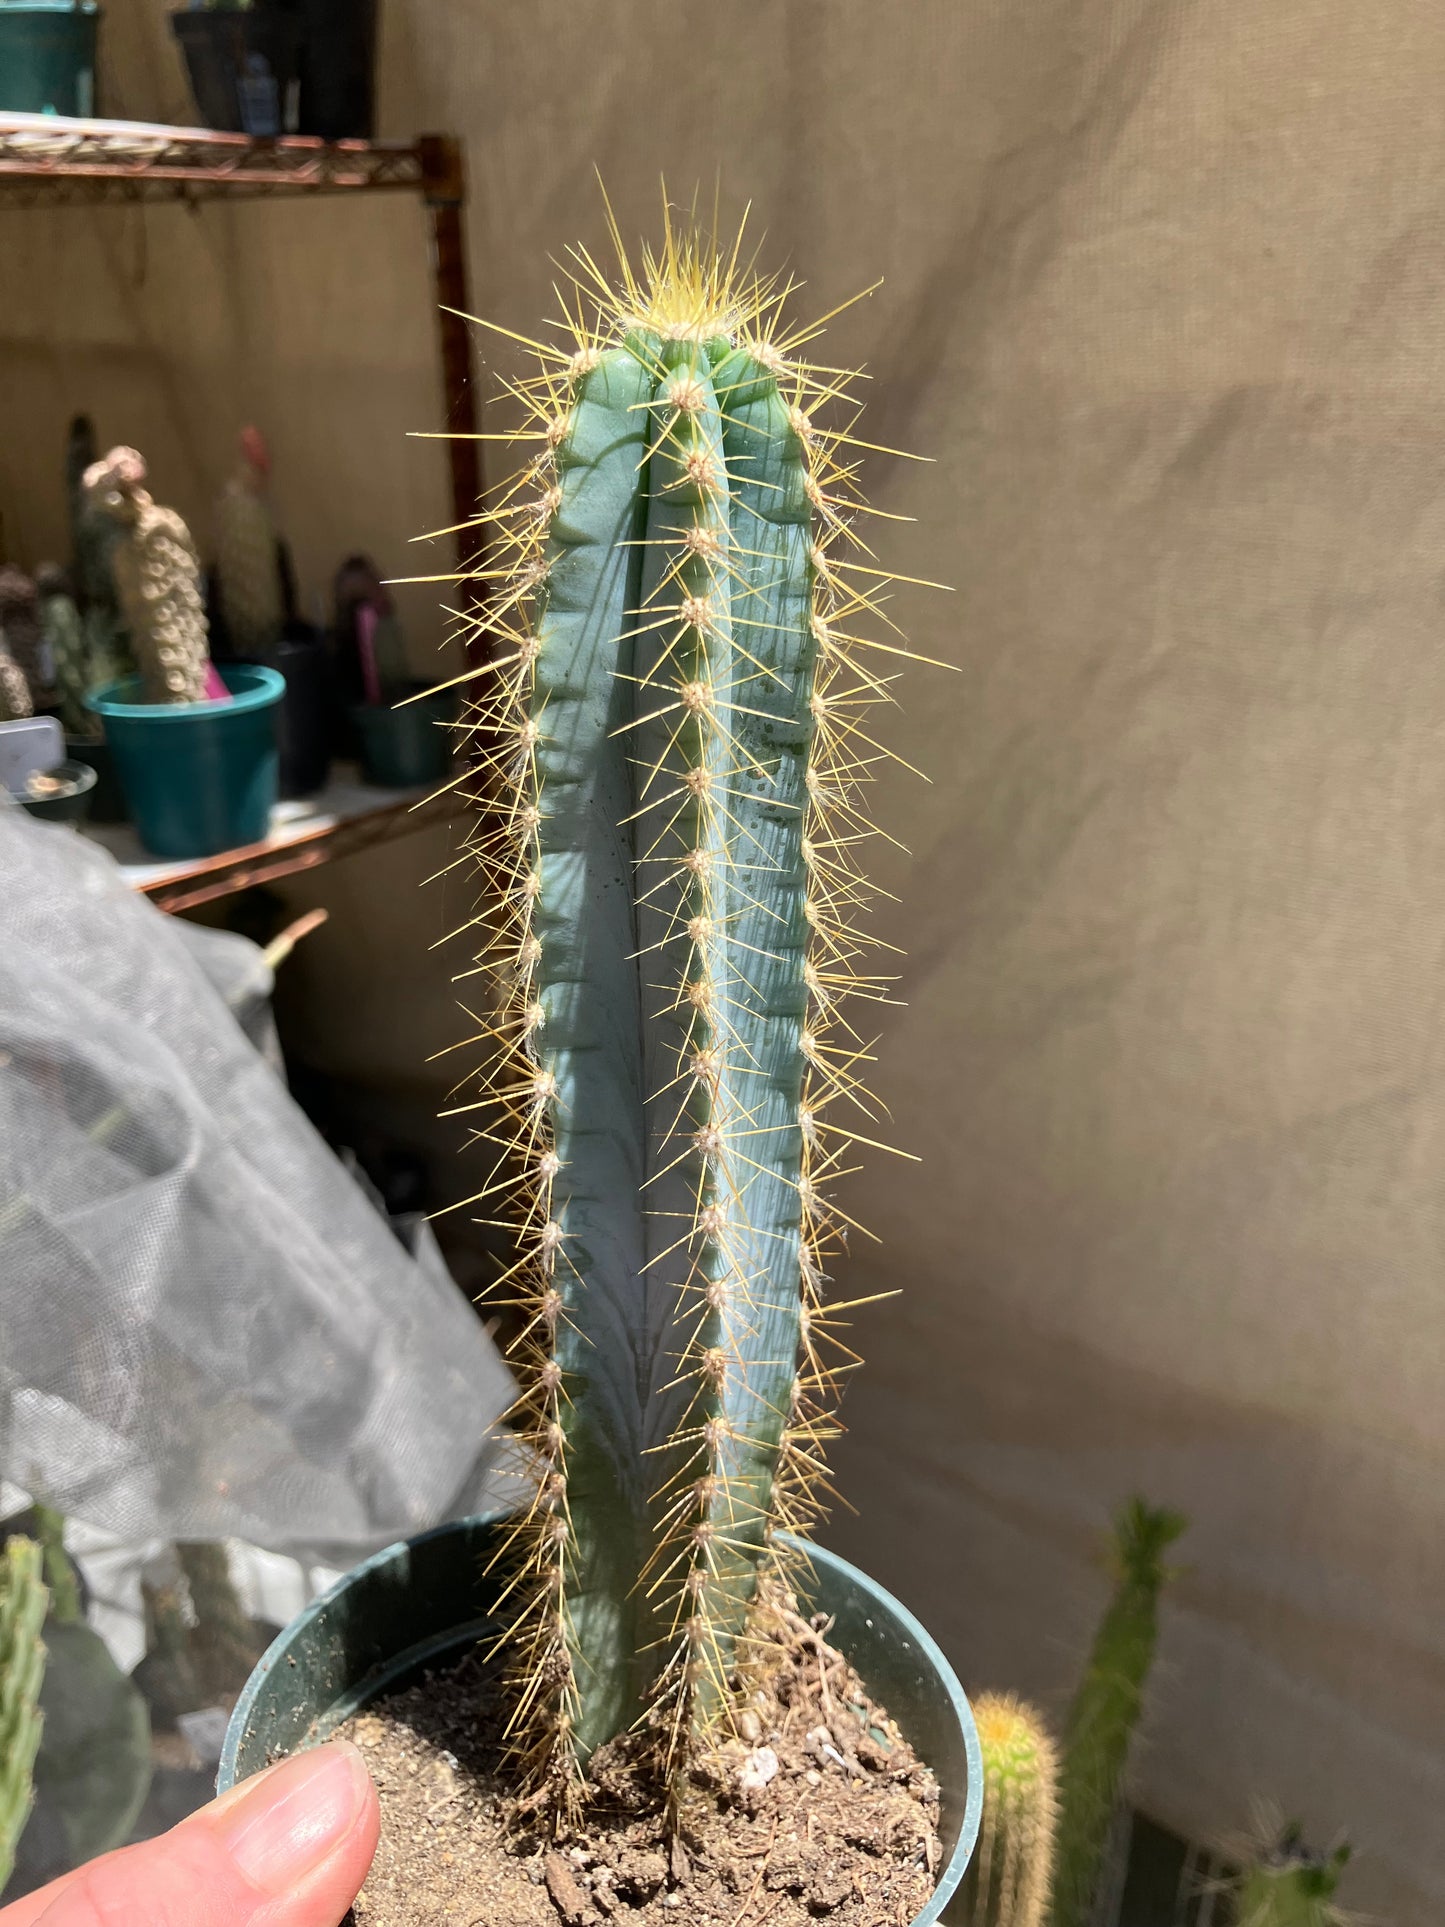 Pilosocereus Blue Azureus Cactus 8"Tall #45B